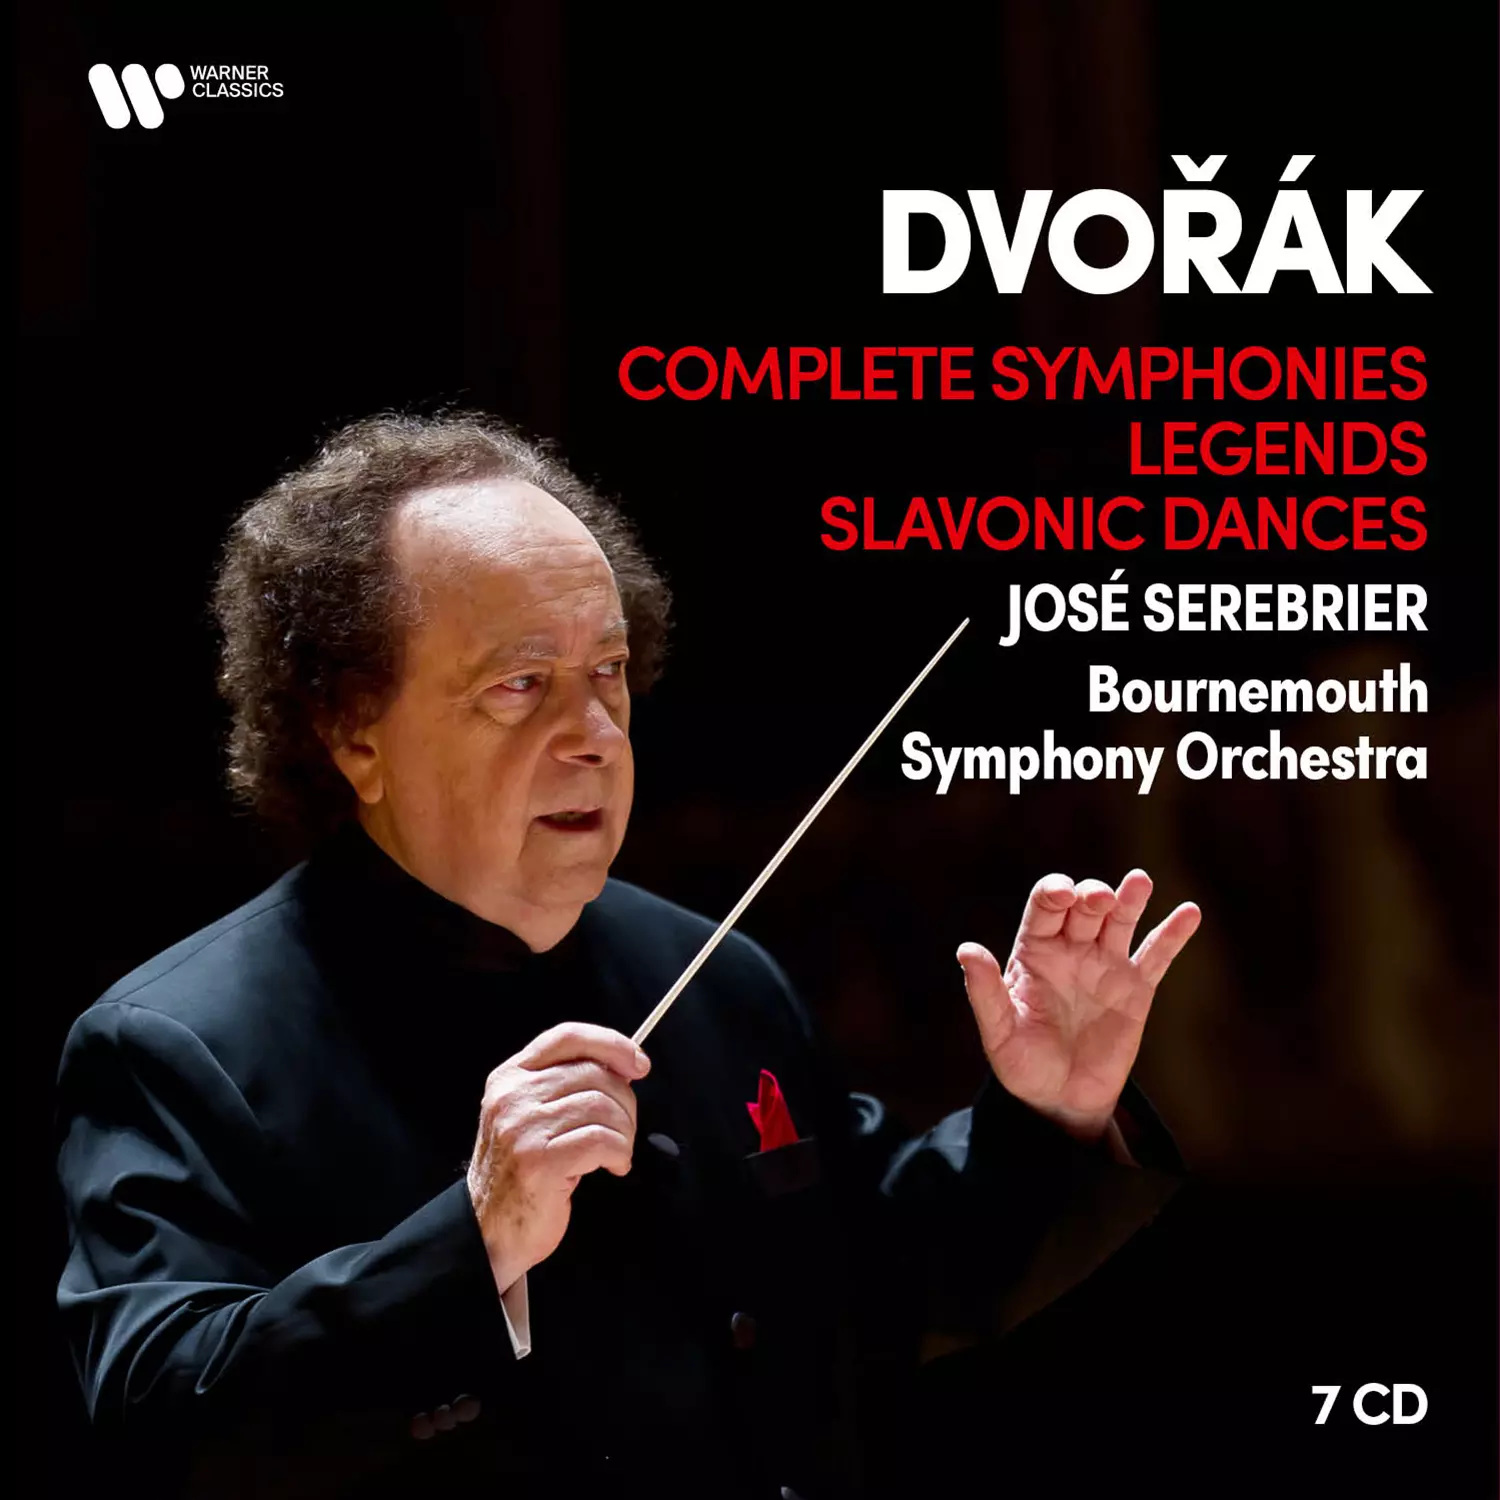 Dvorak: Complete Symphonies, Legends, Slavonic Dances 